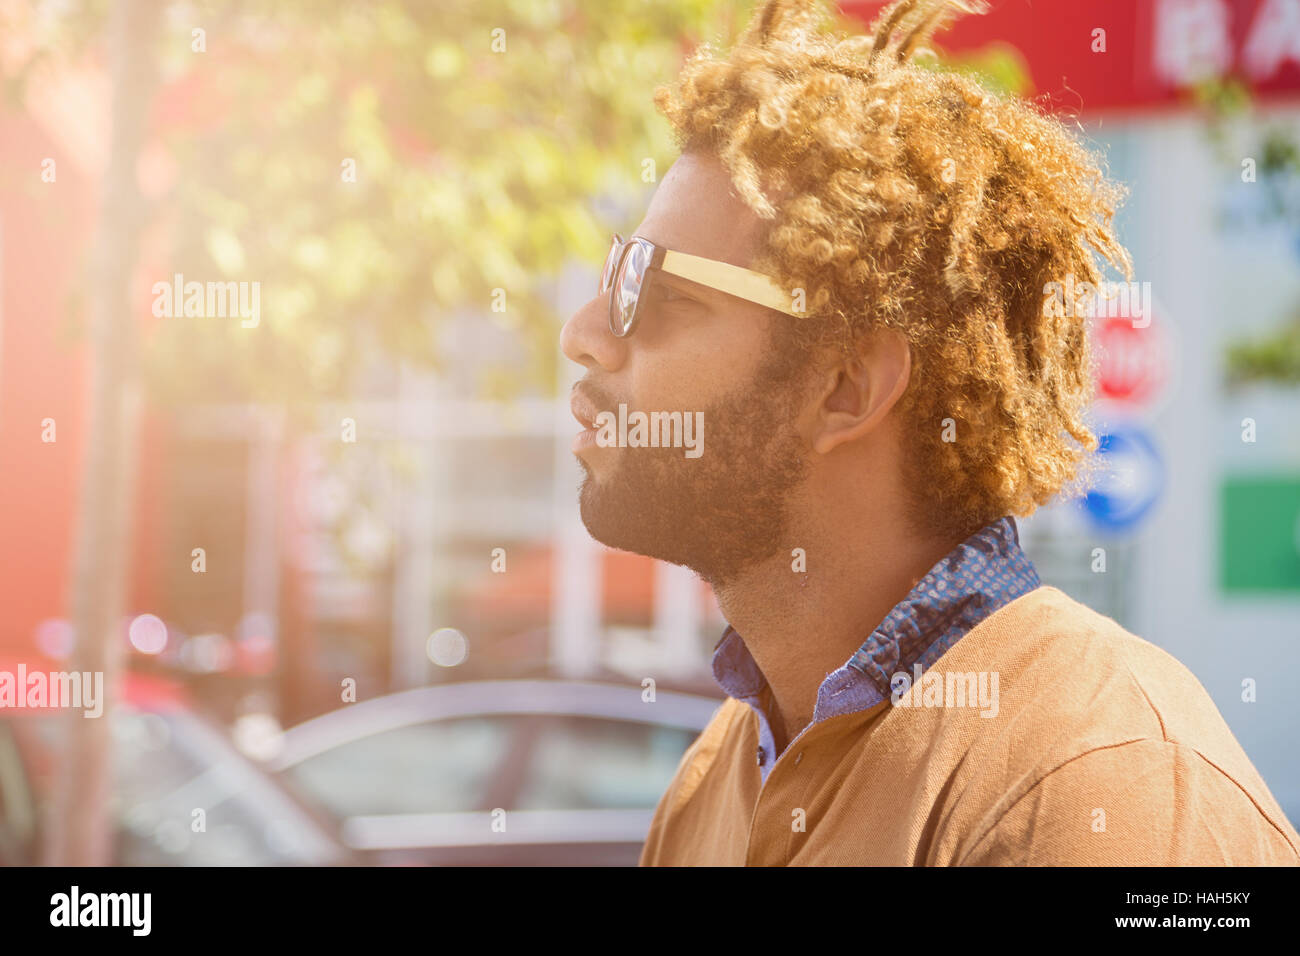 Portrait de jeune homme noir avec dread locks portant des lunettes de soleil.  Bien effet appliqué Photo Stock - Alamy